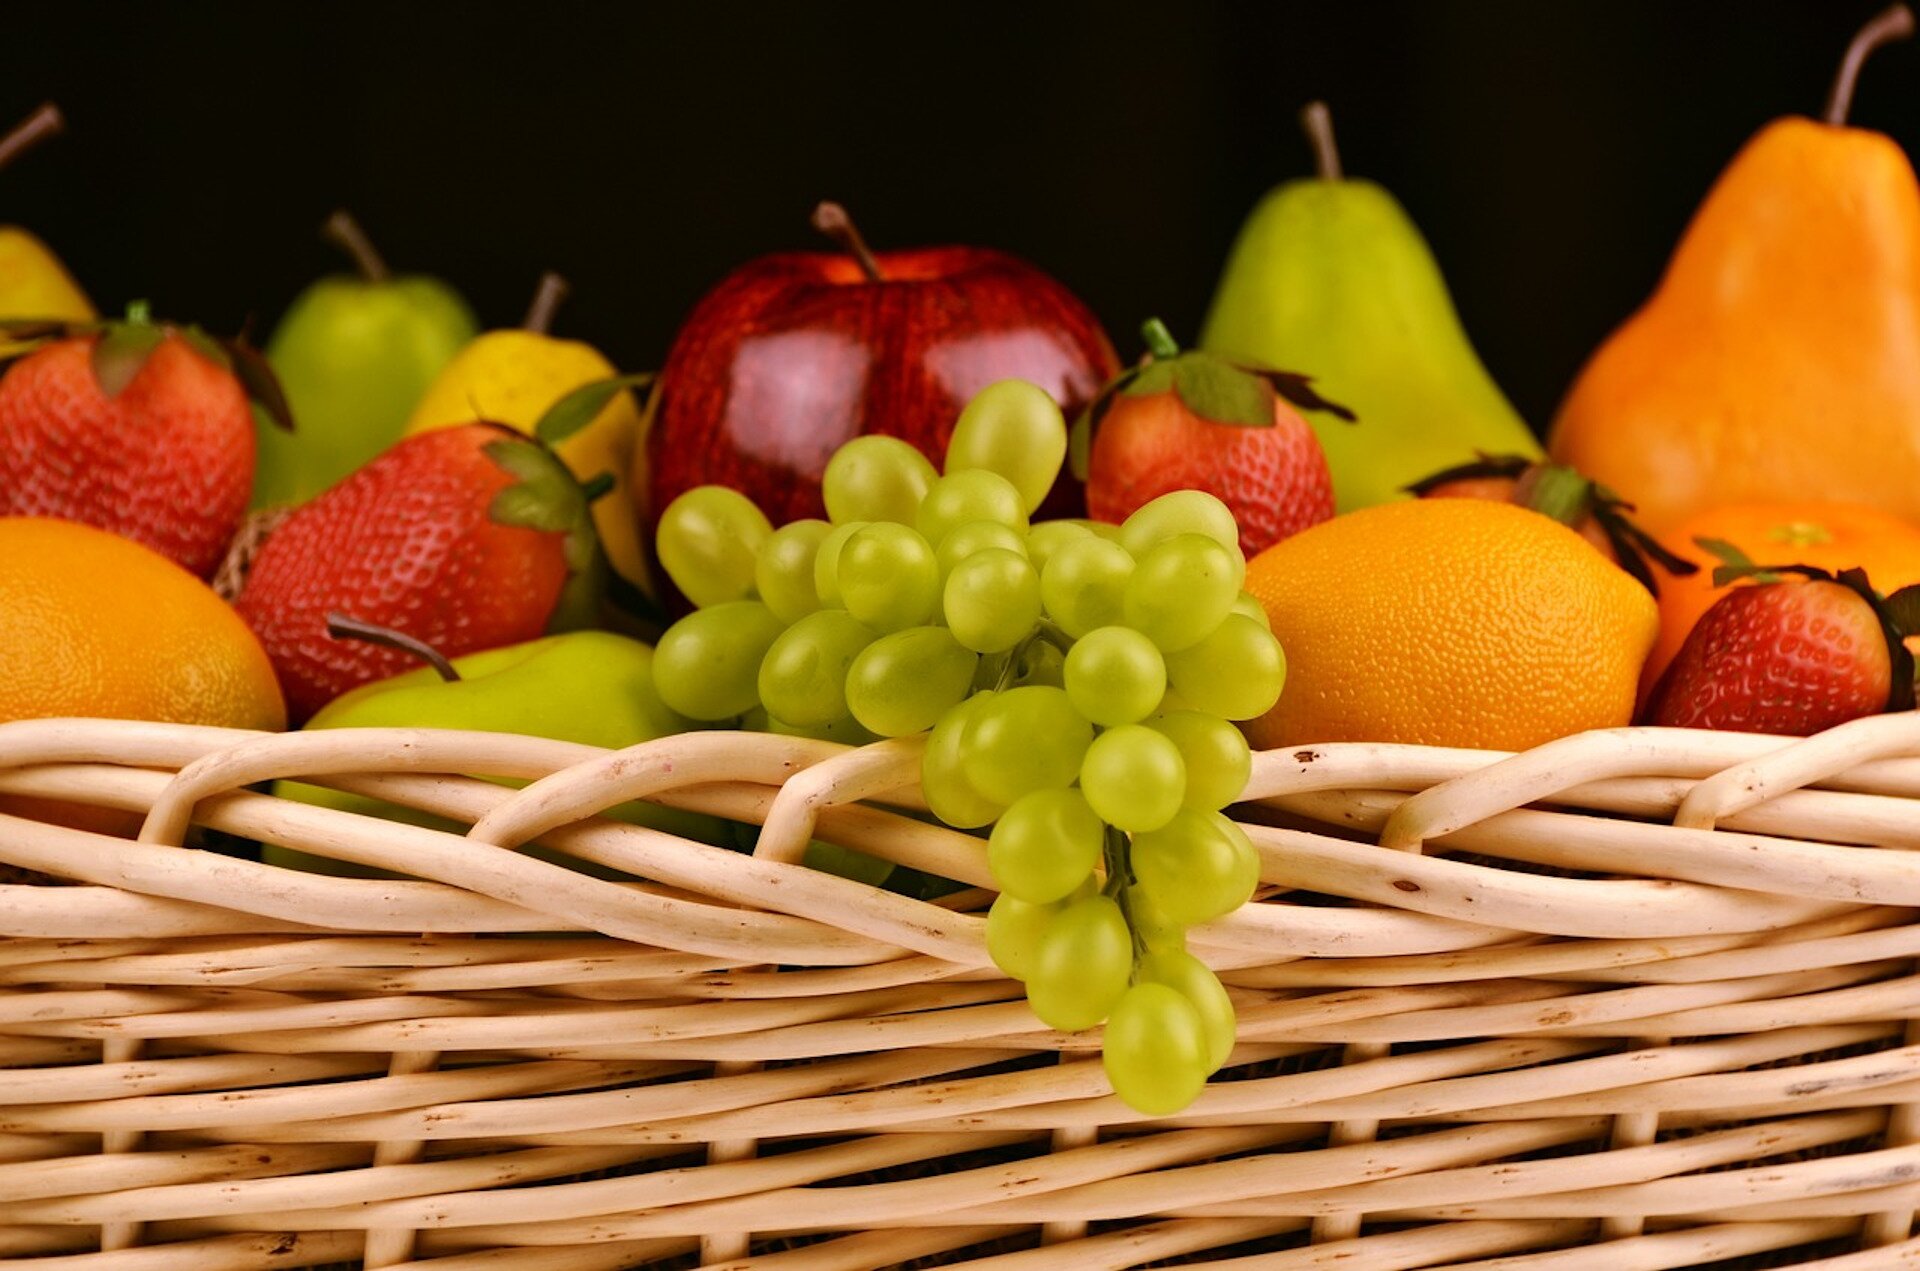 Zdjęcie przedstawia wiklinowy kosz z owocami: truskawki, kiść winogron, gruszki, pomarańcze i jabłka.